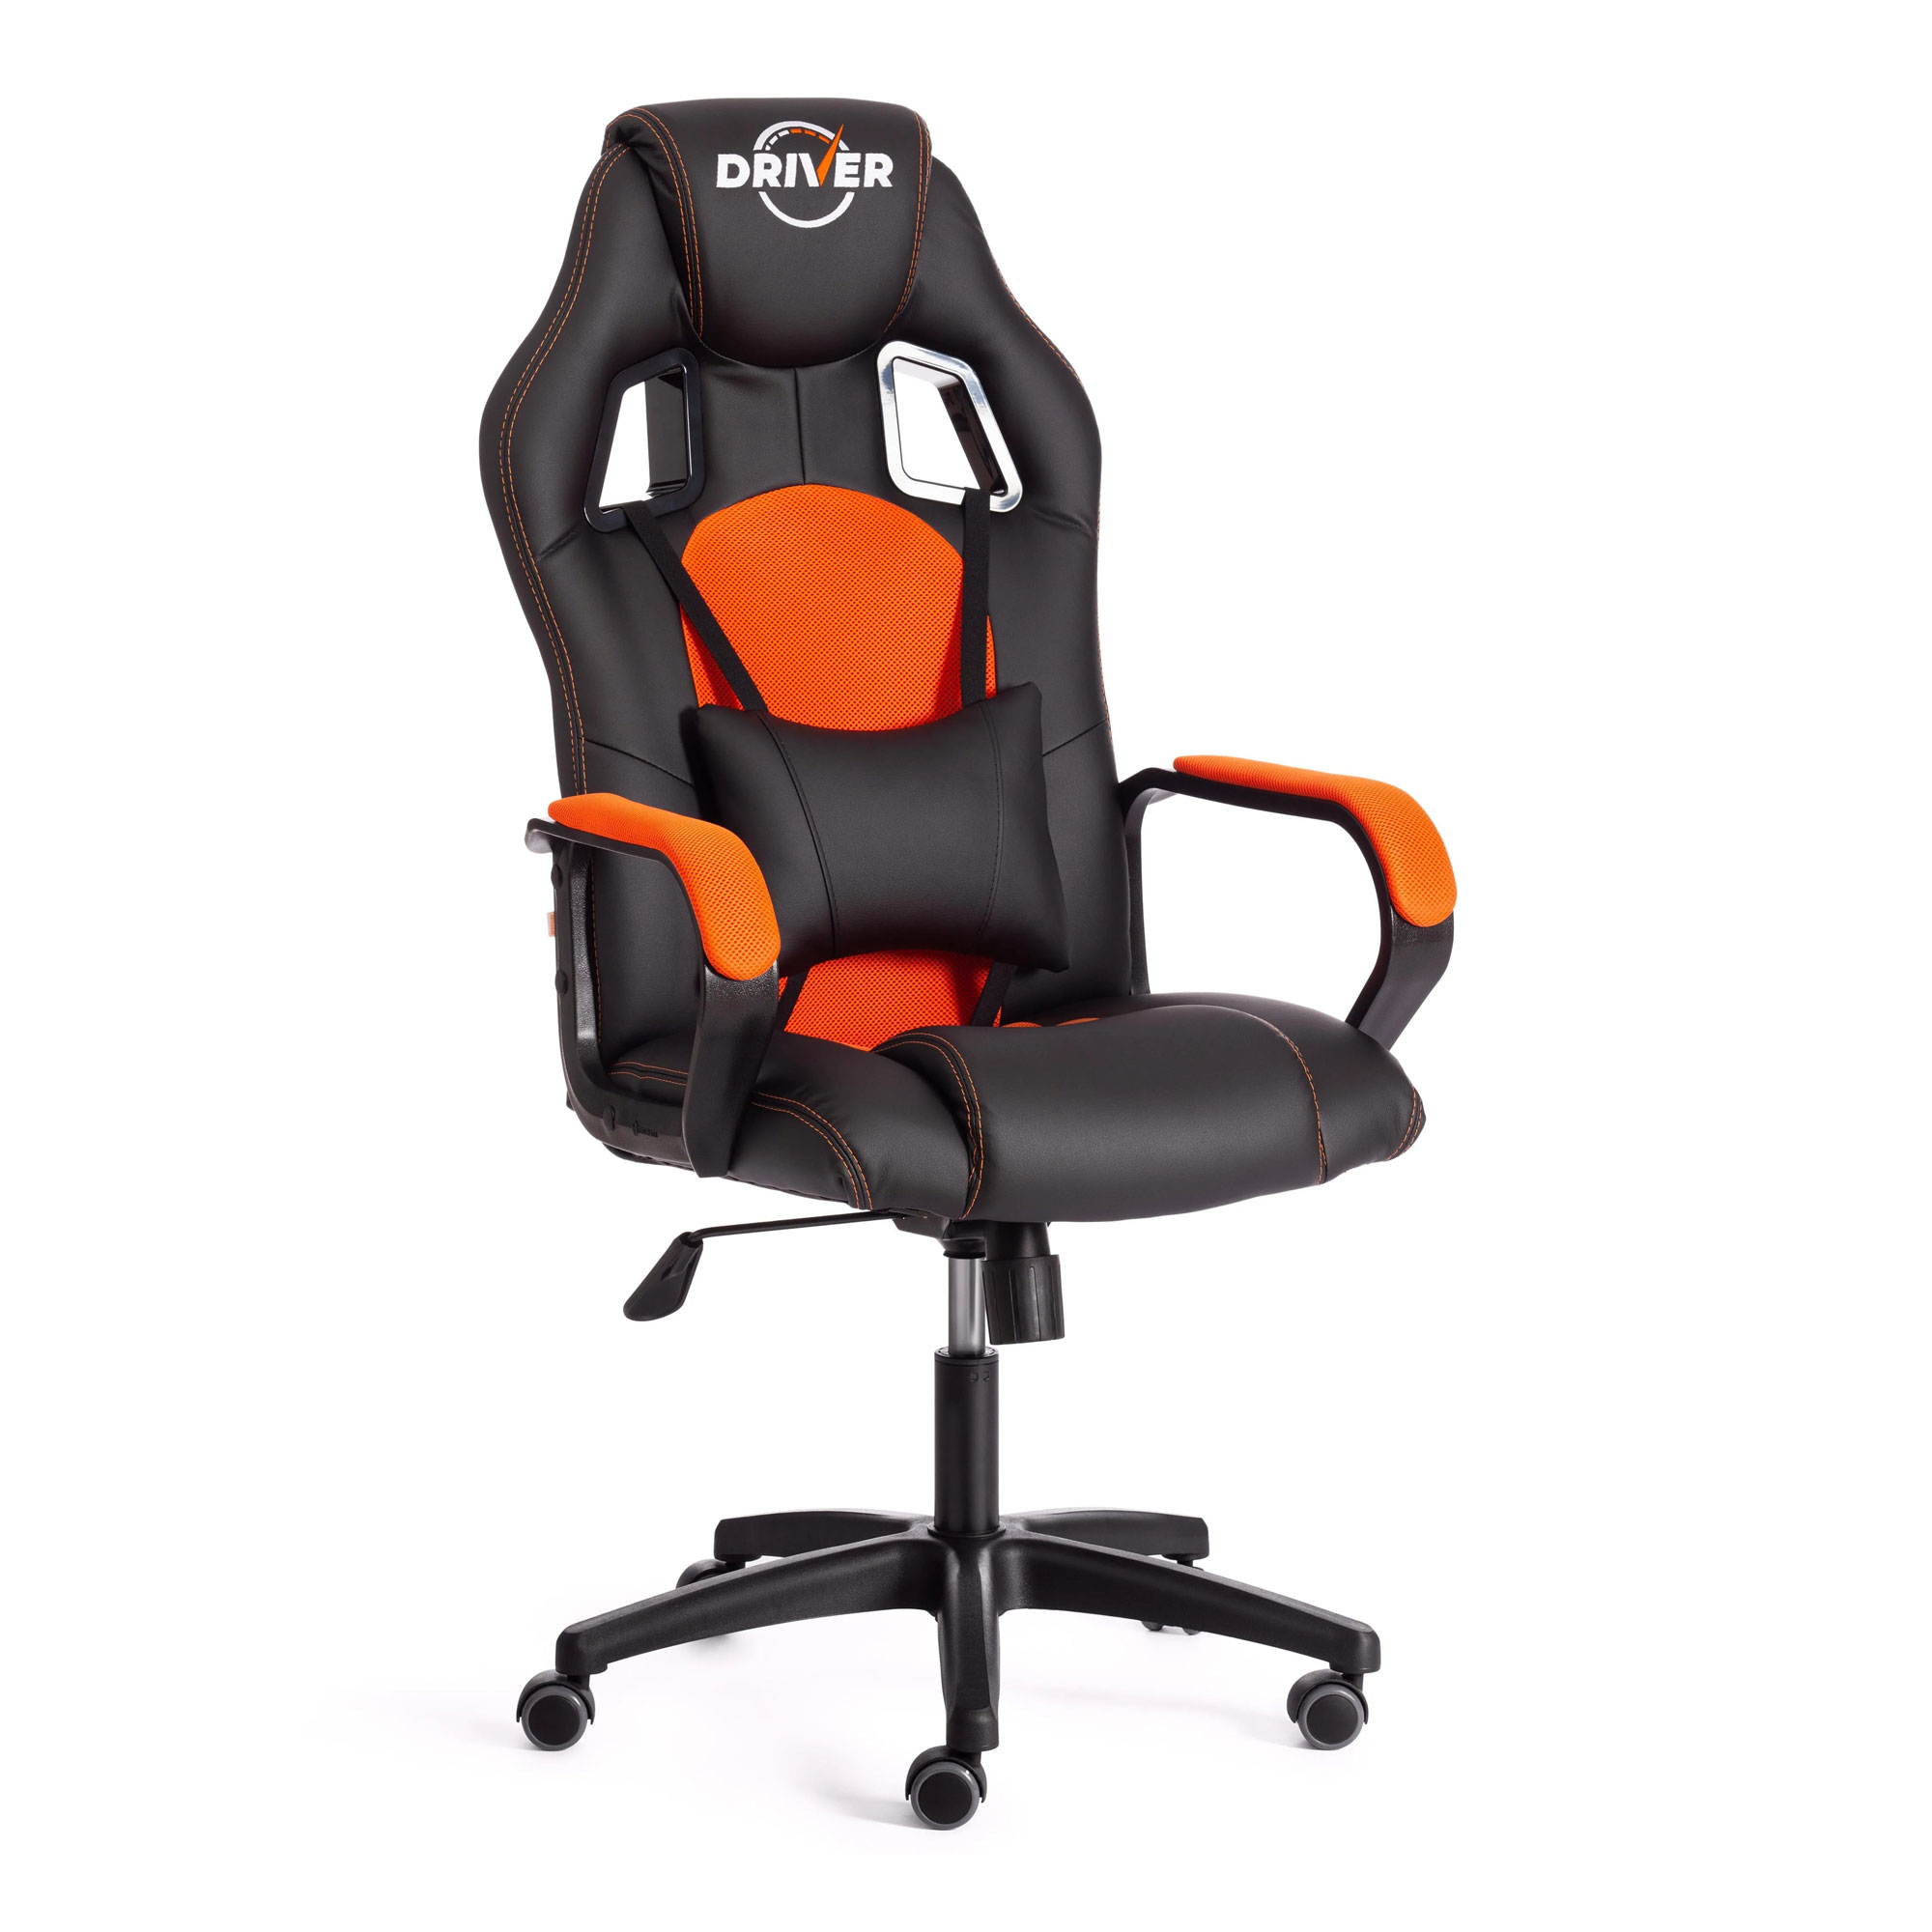 Кресло компьютерное TC Driver искусственная кожа чёрное с оранжевым 55х49х126 см кресло компьютерное tc driver искусственная кожа чёрное с оранжевым 55х49х126 см